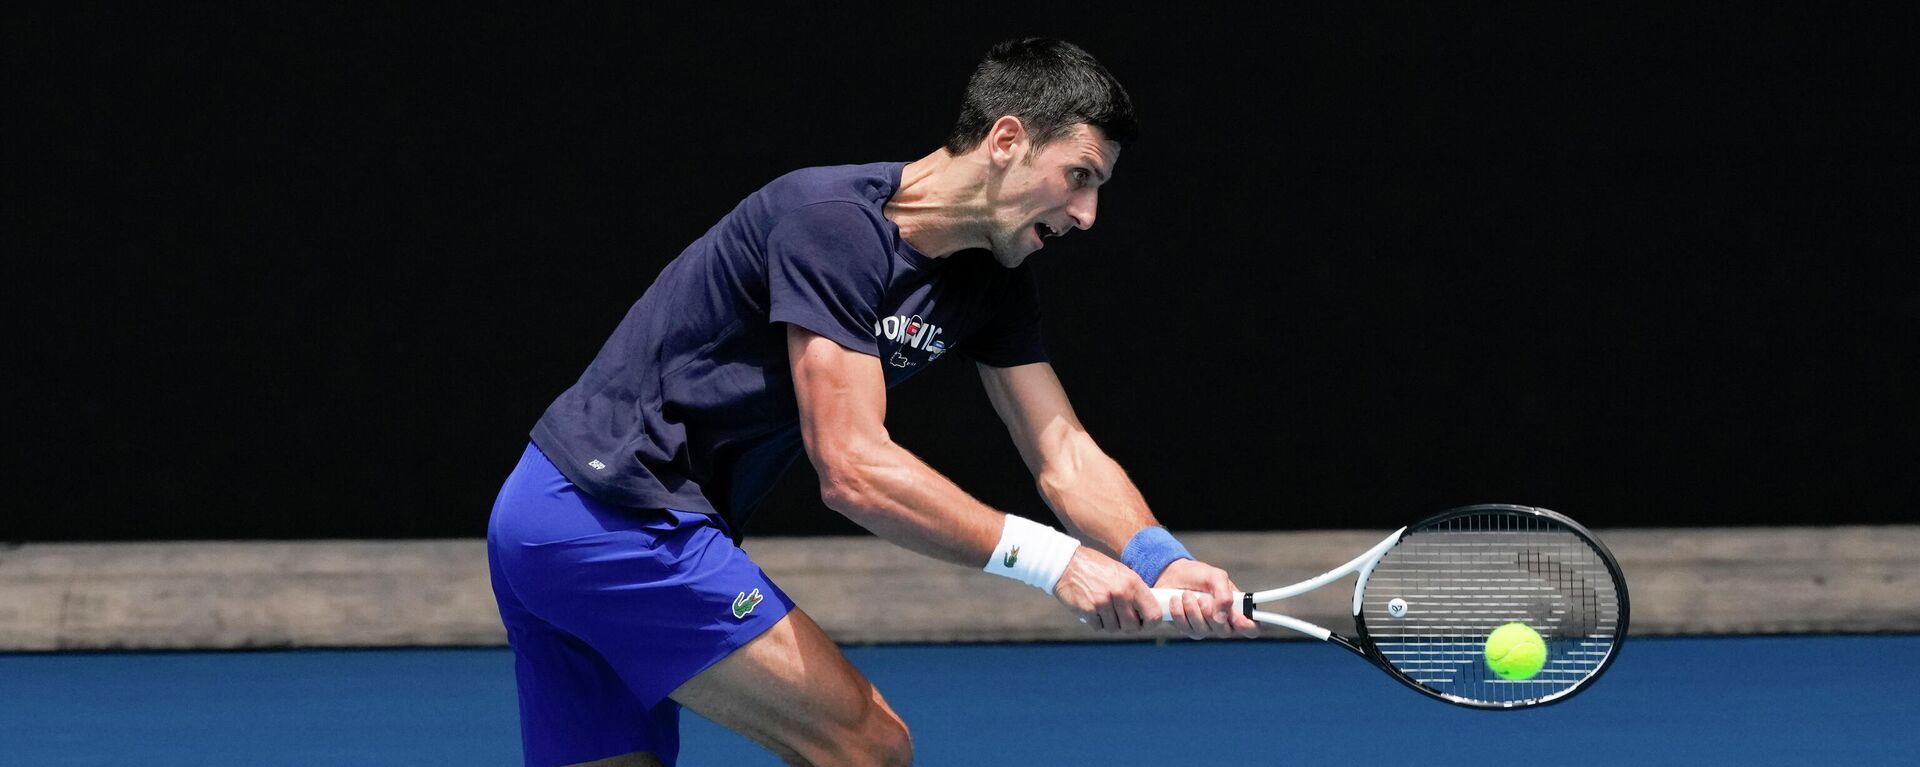 Avustralya Açık Tenis Turnuvası hazırlıklarını sürdüren tek erkekler dünya sıralamasının bir numarası Sırp tenisçi Novak Djokovic - Sputnik Türkiye, 1920, 12.01.2022